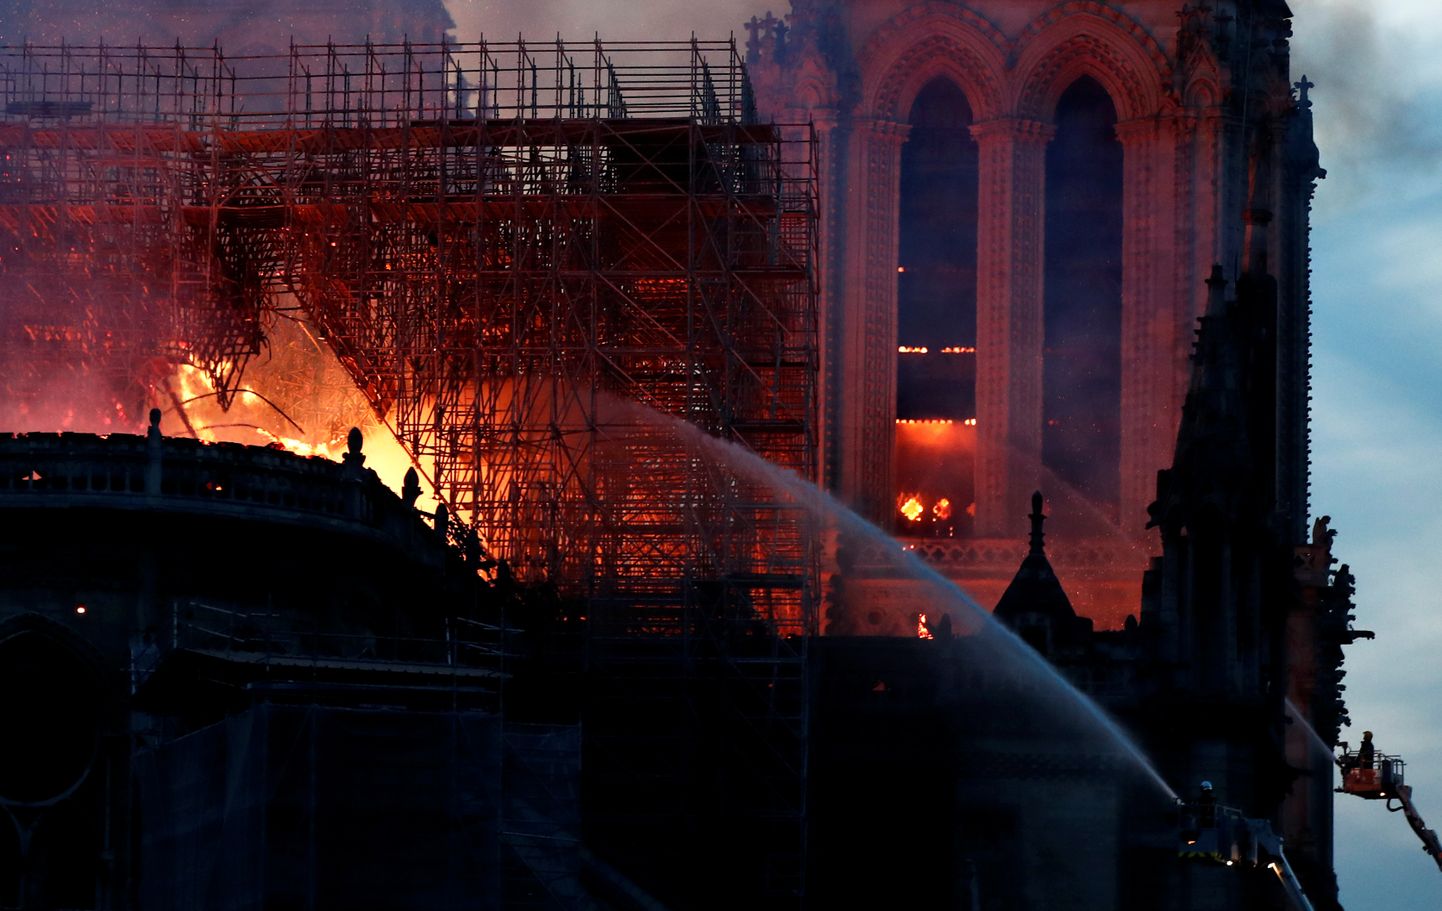 Esmaspäeva õhtul kella kaheksa paiku Eesti aja järgi lahvatas Pariisis Notre-Dame'i katedraalis tulekahju. Veel pole põlengu põhjuseid ametlikult kommenteeritud.